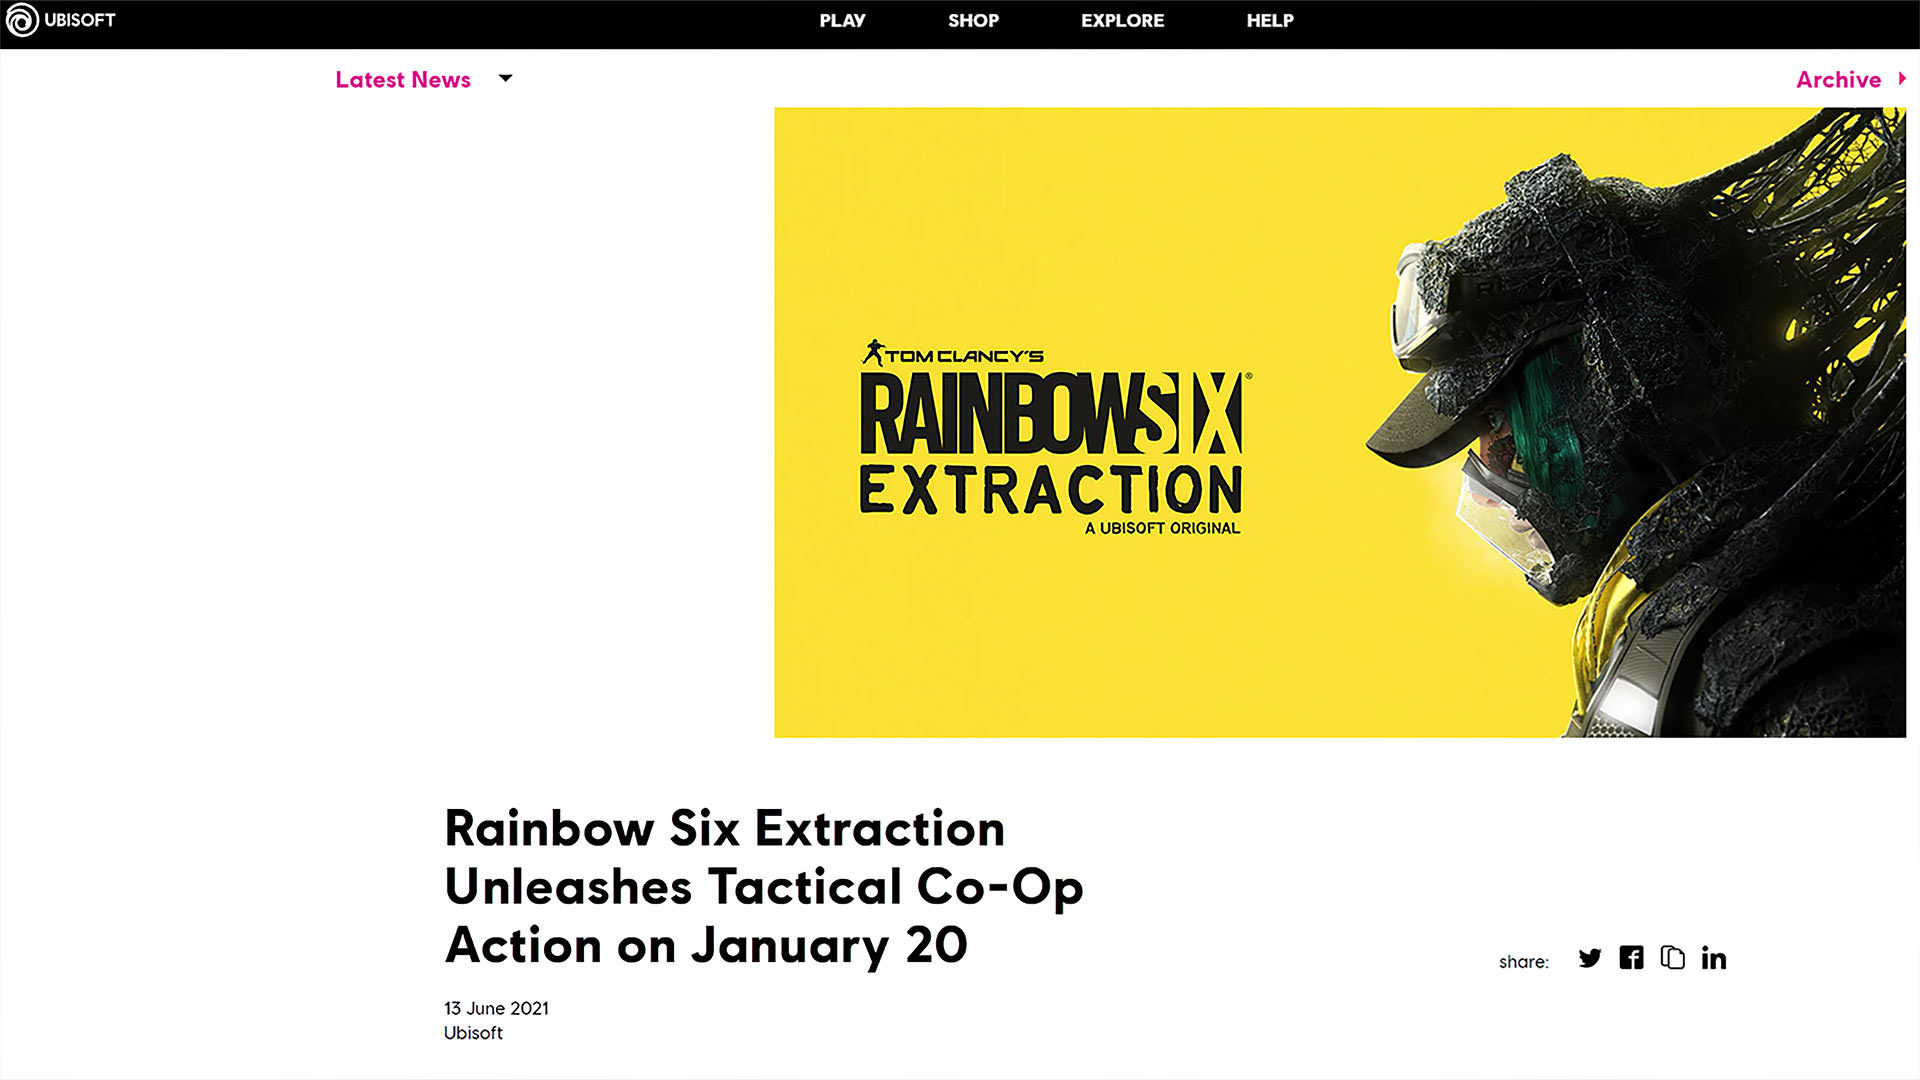 فاش شدن تاریخ انتشار بازی Rainbow Six Extraction در سایت یوبیسافت